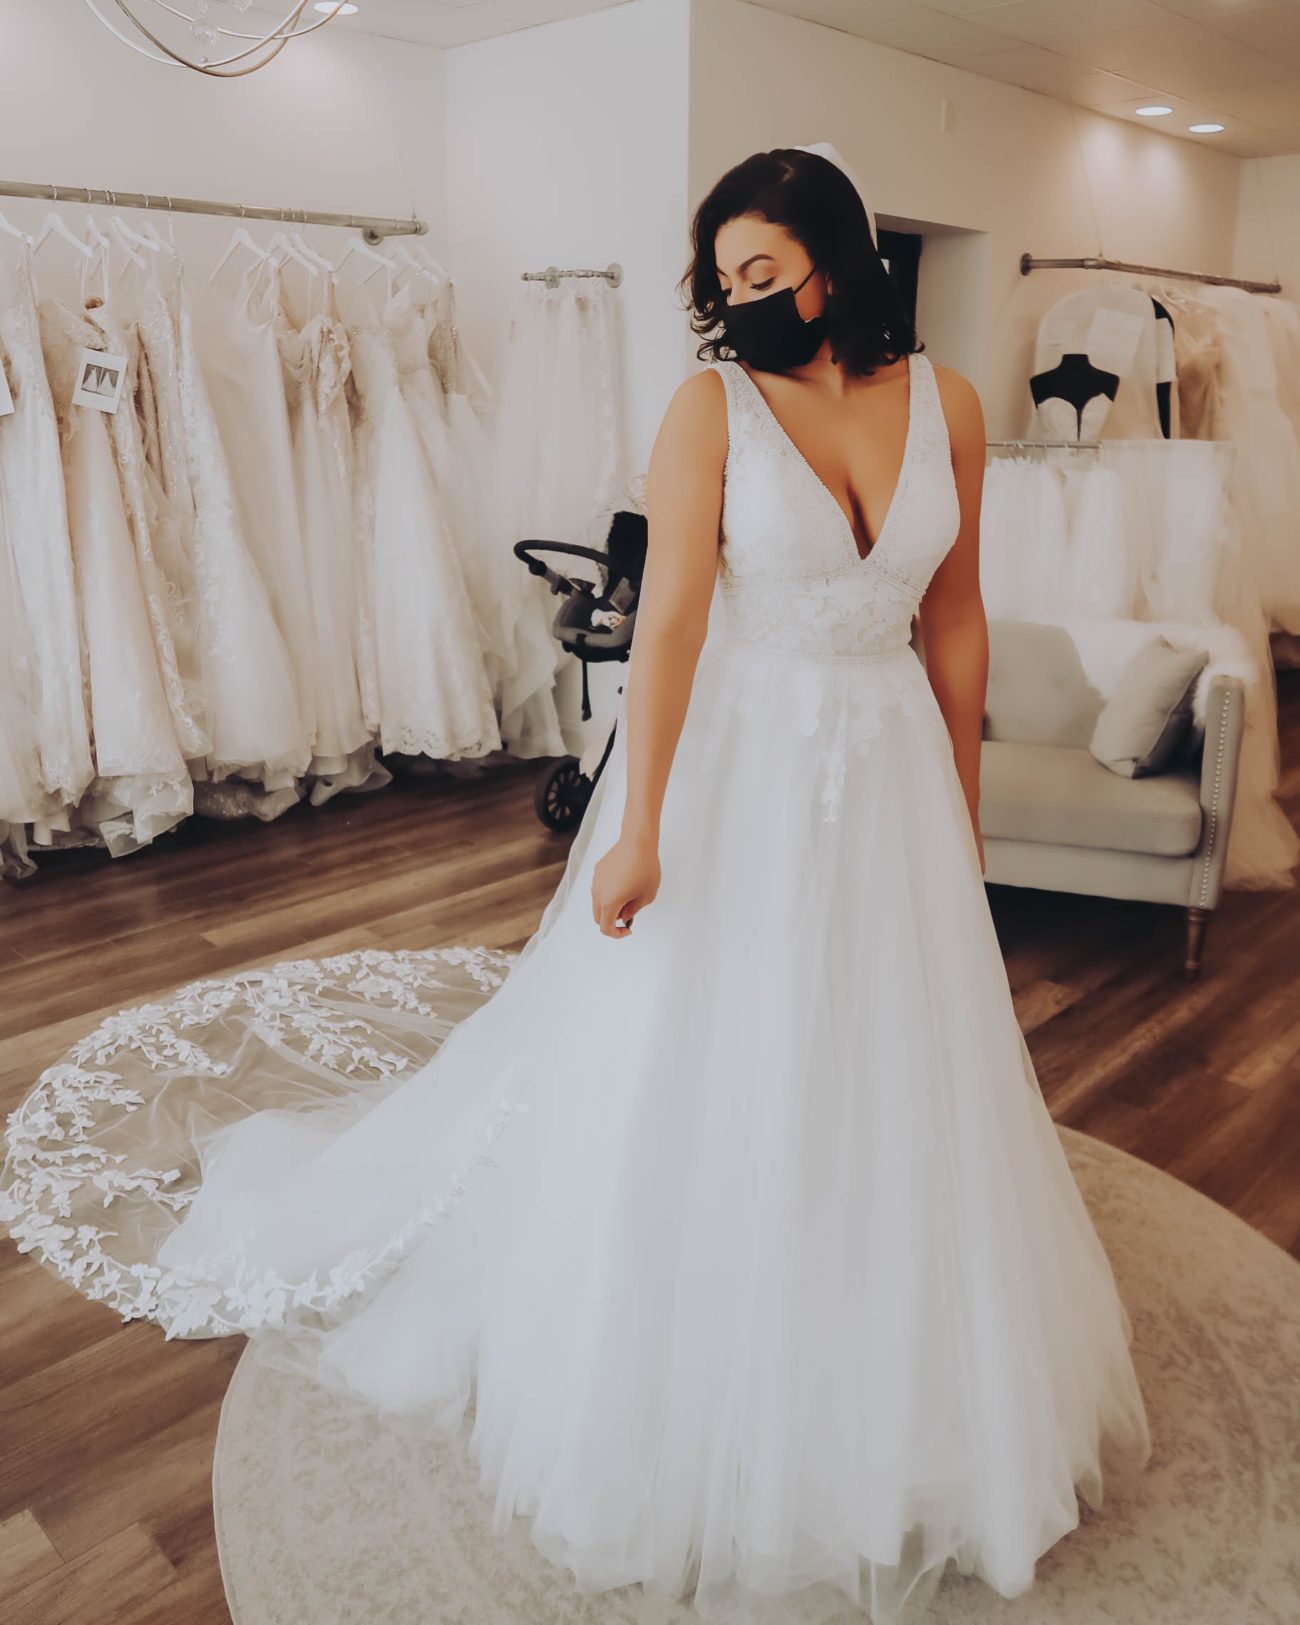 Wedding Dress Shopping at VESA Brides | Photo Diary